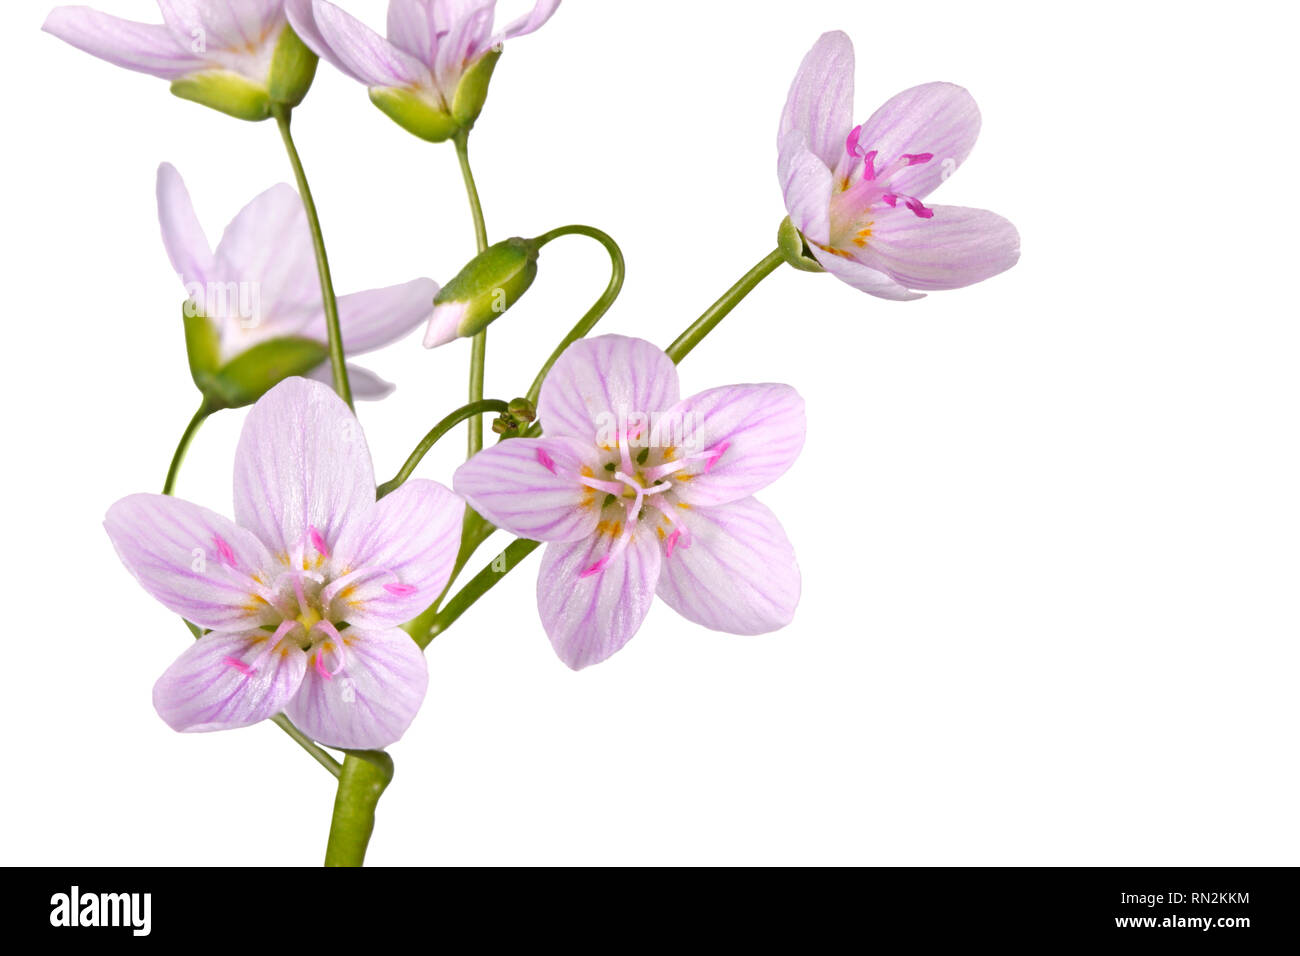 Stelo con diversi fiori aperti della Primavera di bellezza di fiori selvaggi (Claytonia virginica) isolati contro uno sfondo bianco Foto Stock